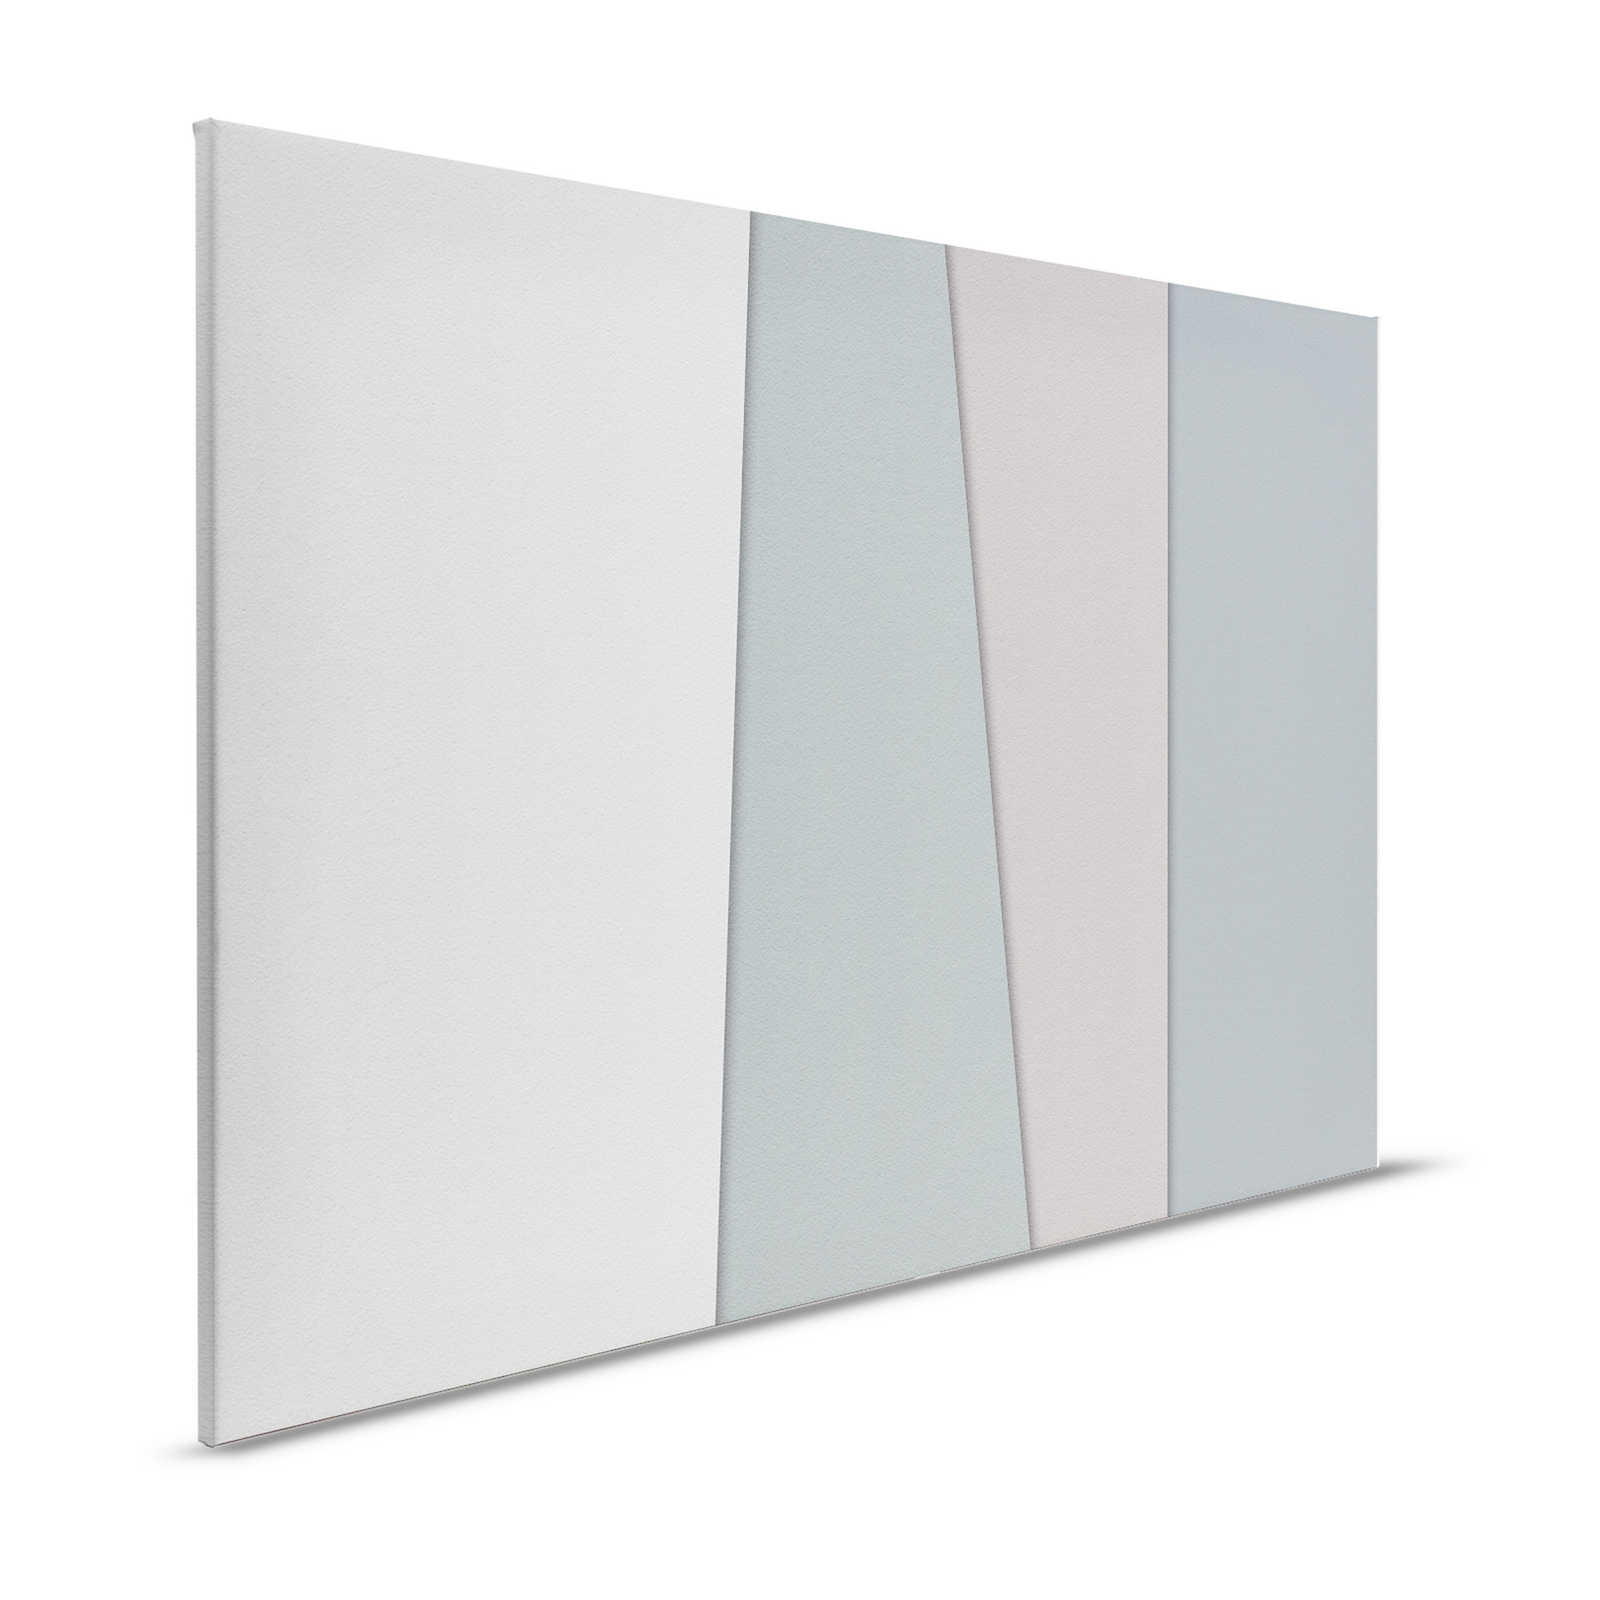 Layered paper 1 - Grafisches Leinwandbild mit Farbflächen in Büttenpapier Struktur – 1,20 m x 0,80 m
